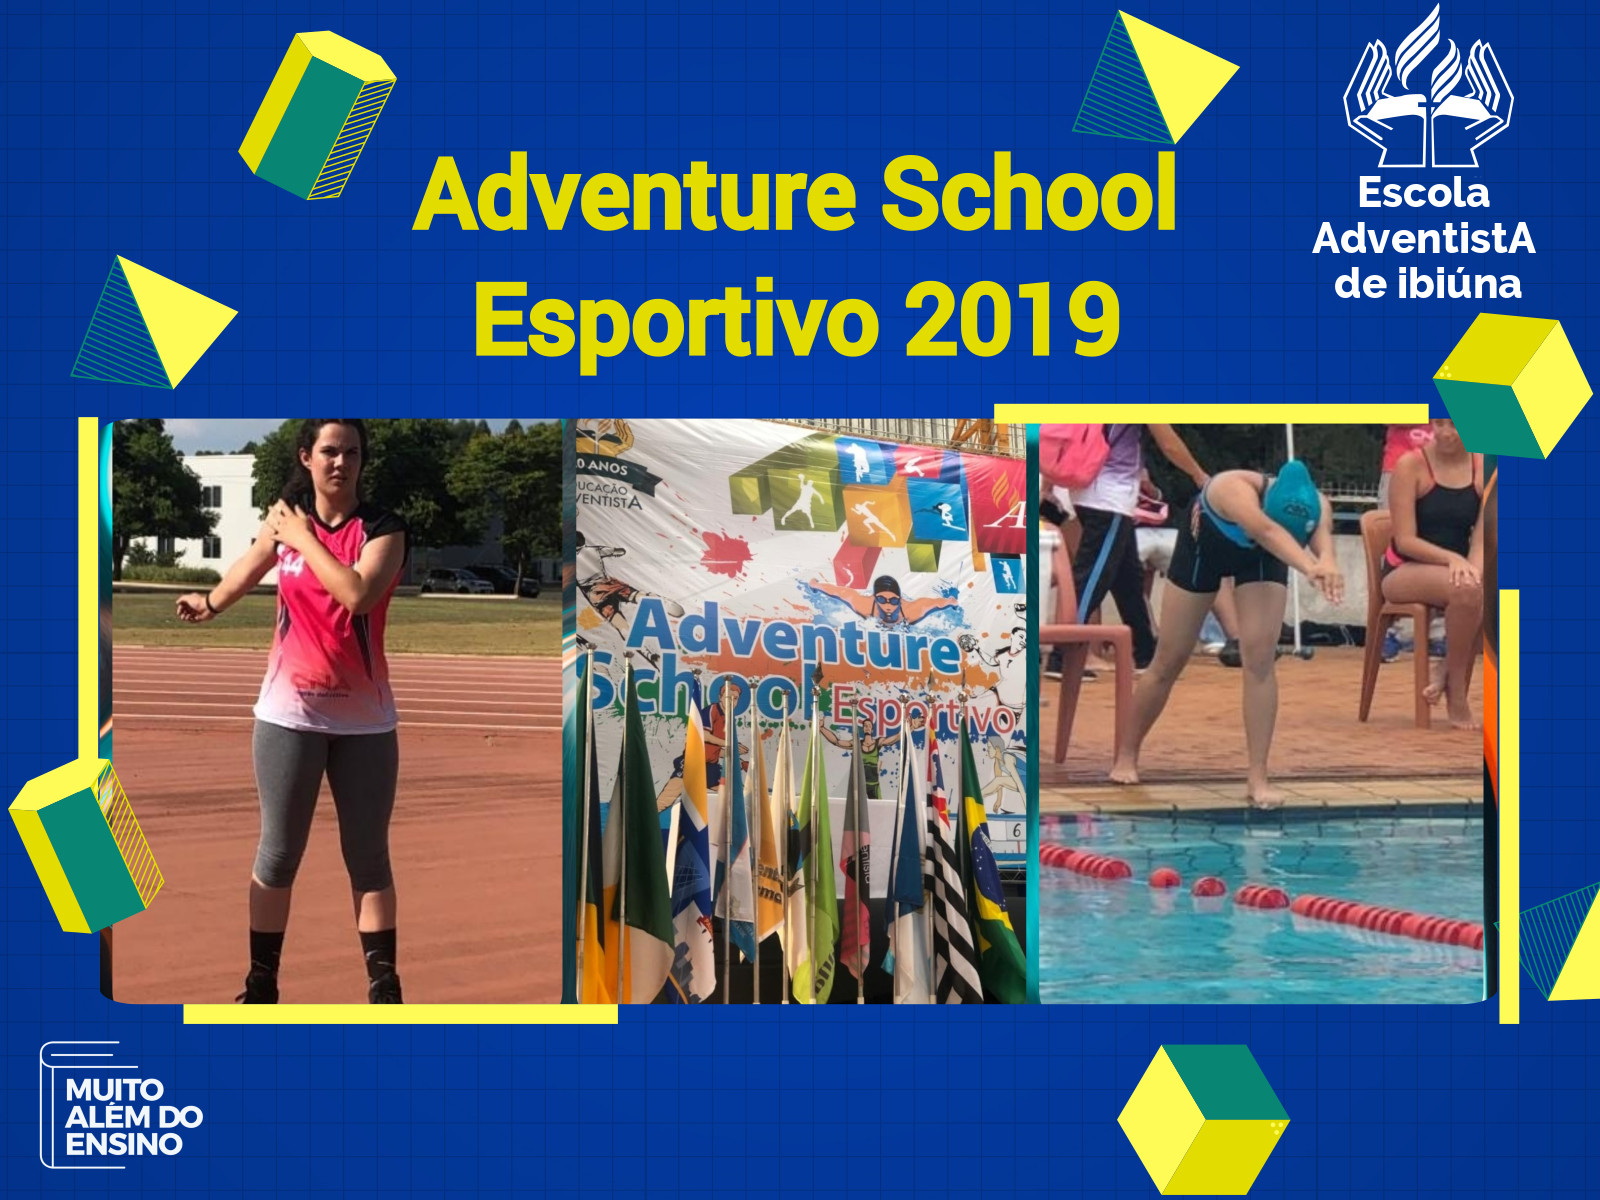 Adventure School Esportivo 2019